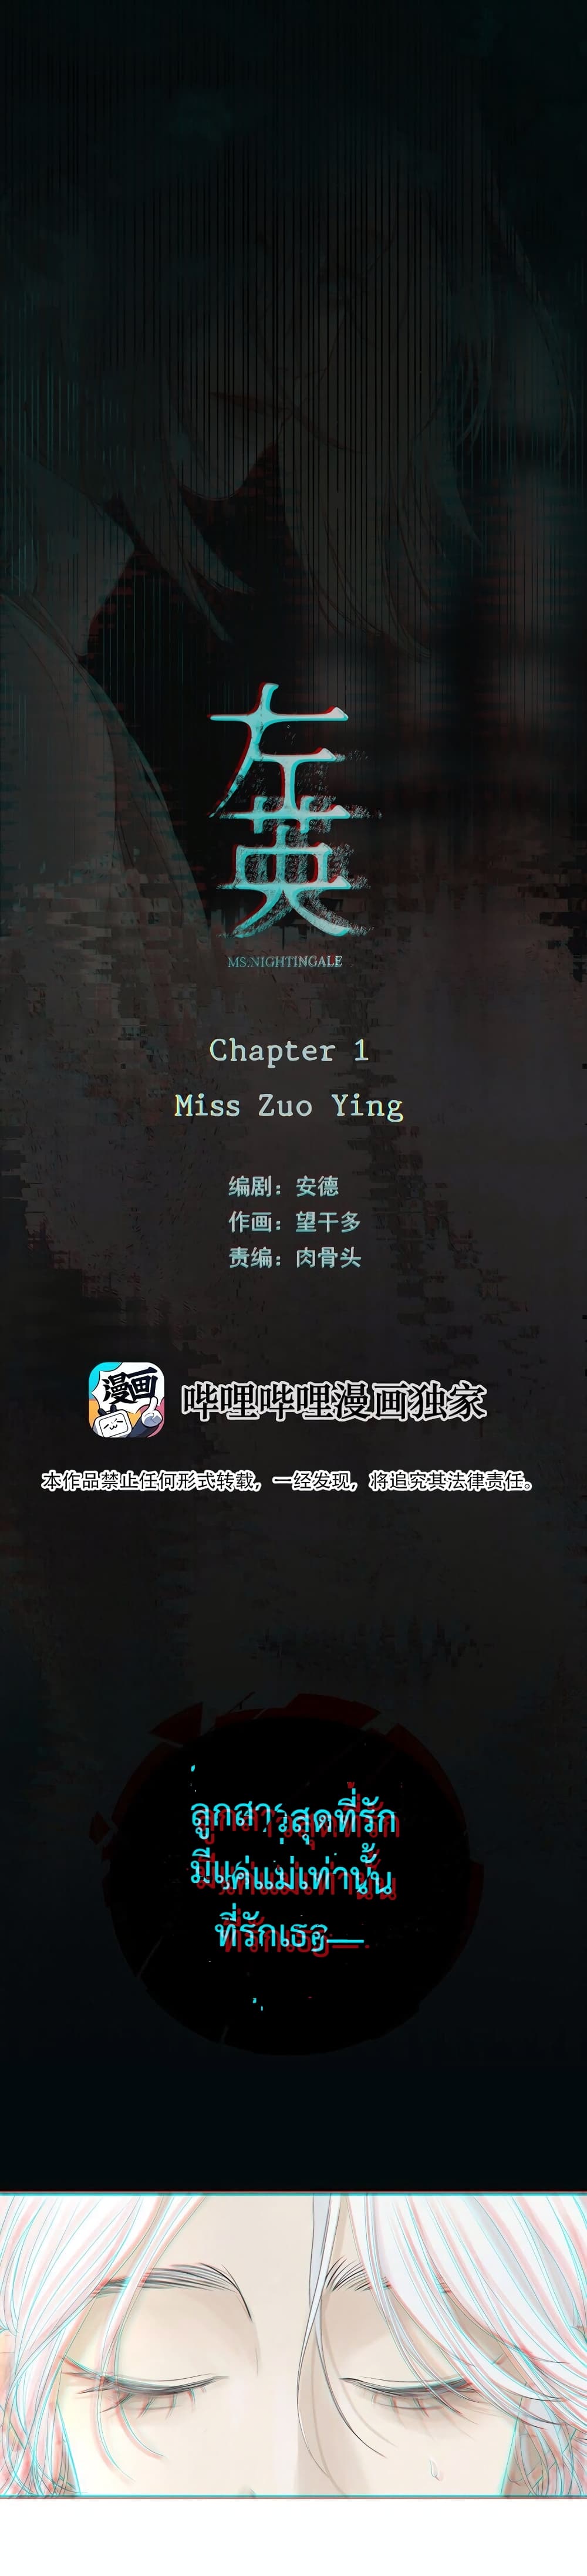 Miss Zuo Ying ตอนที่ 1 (3)